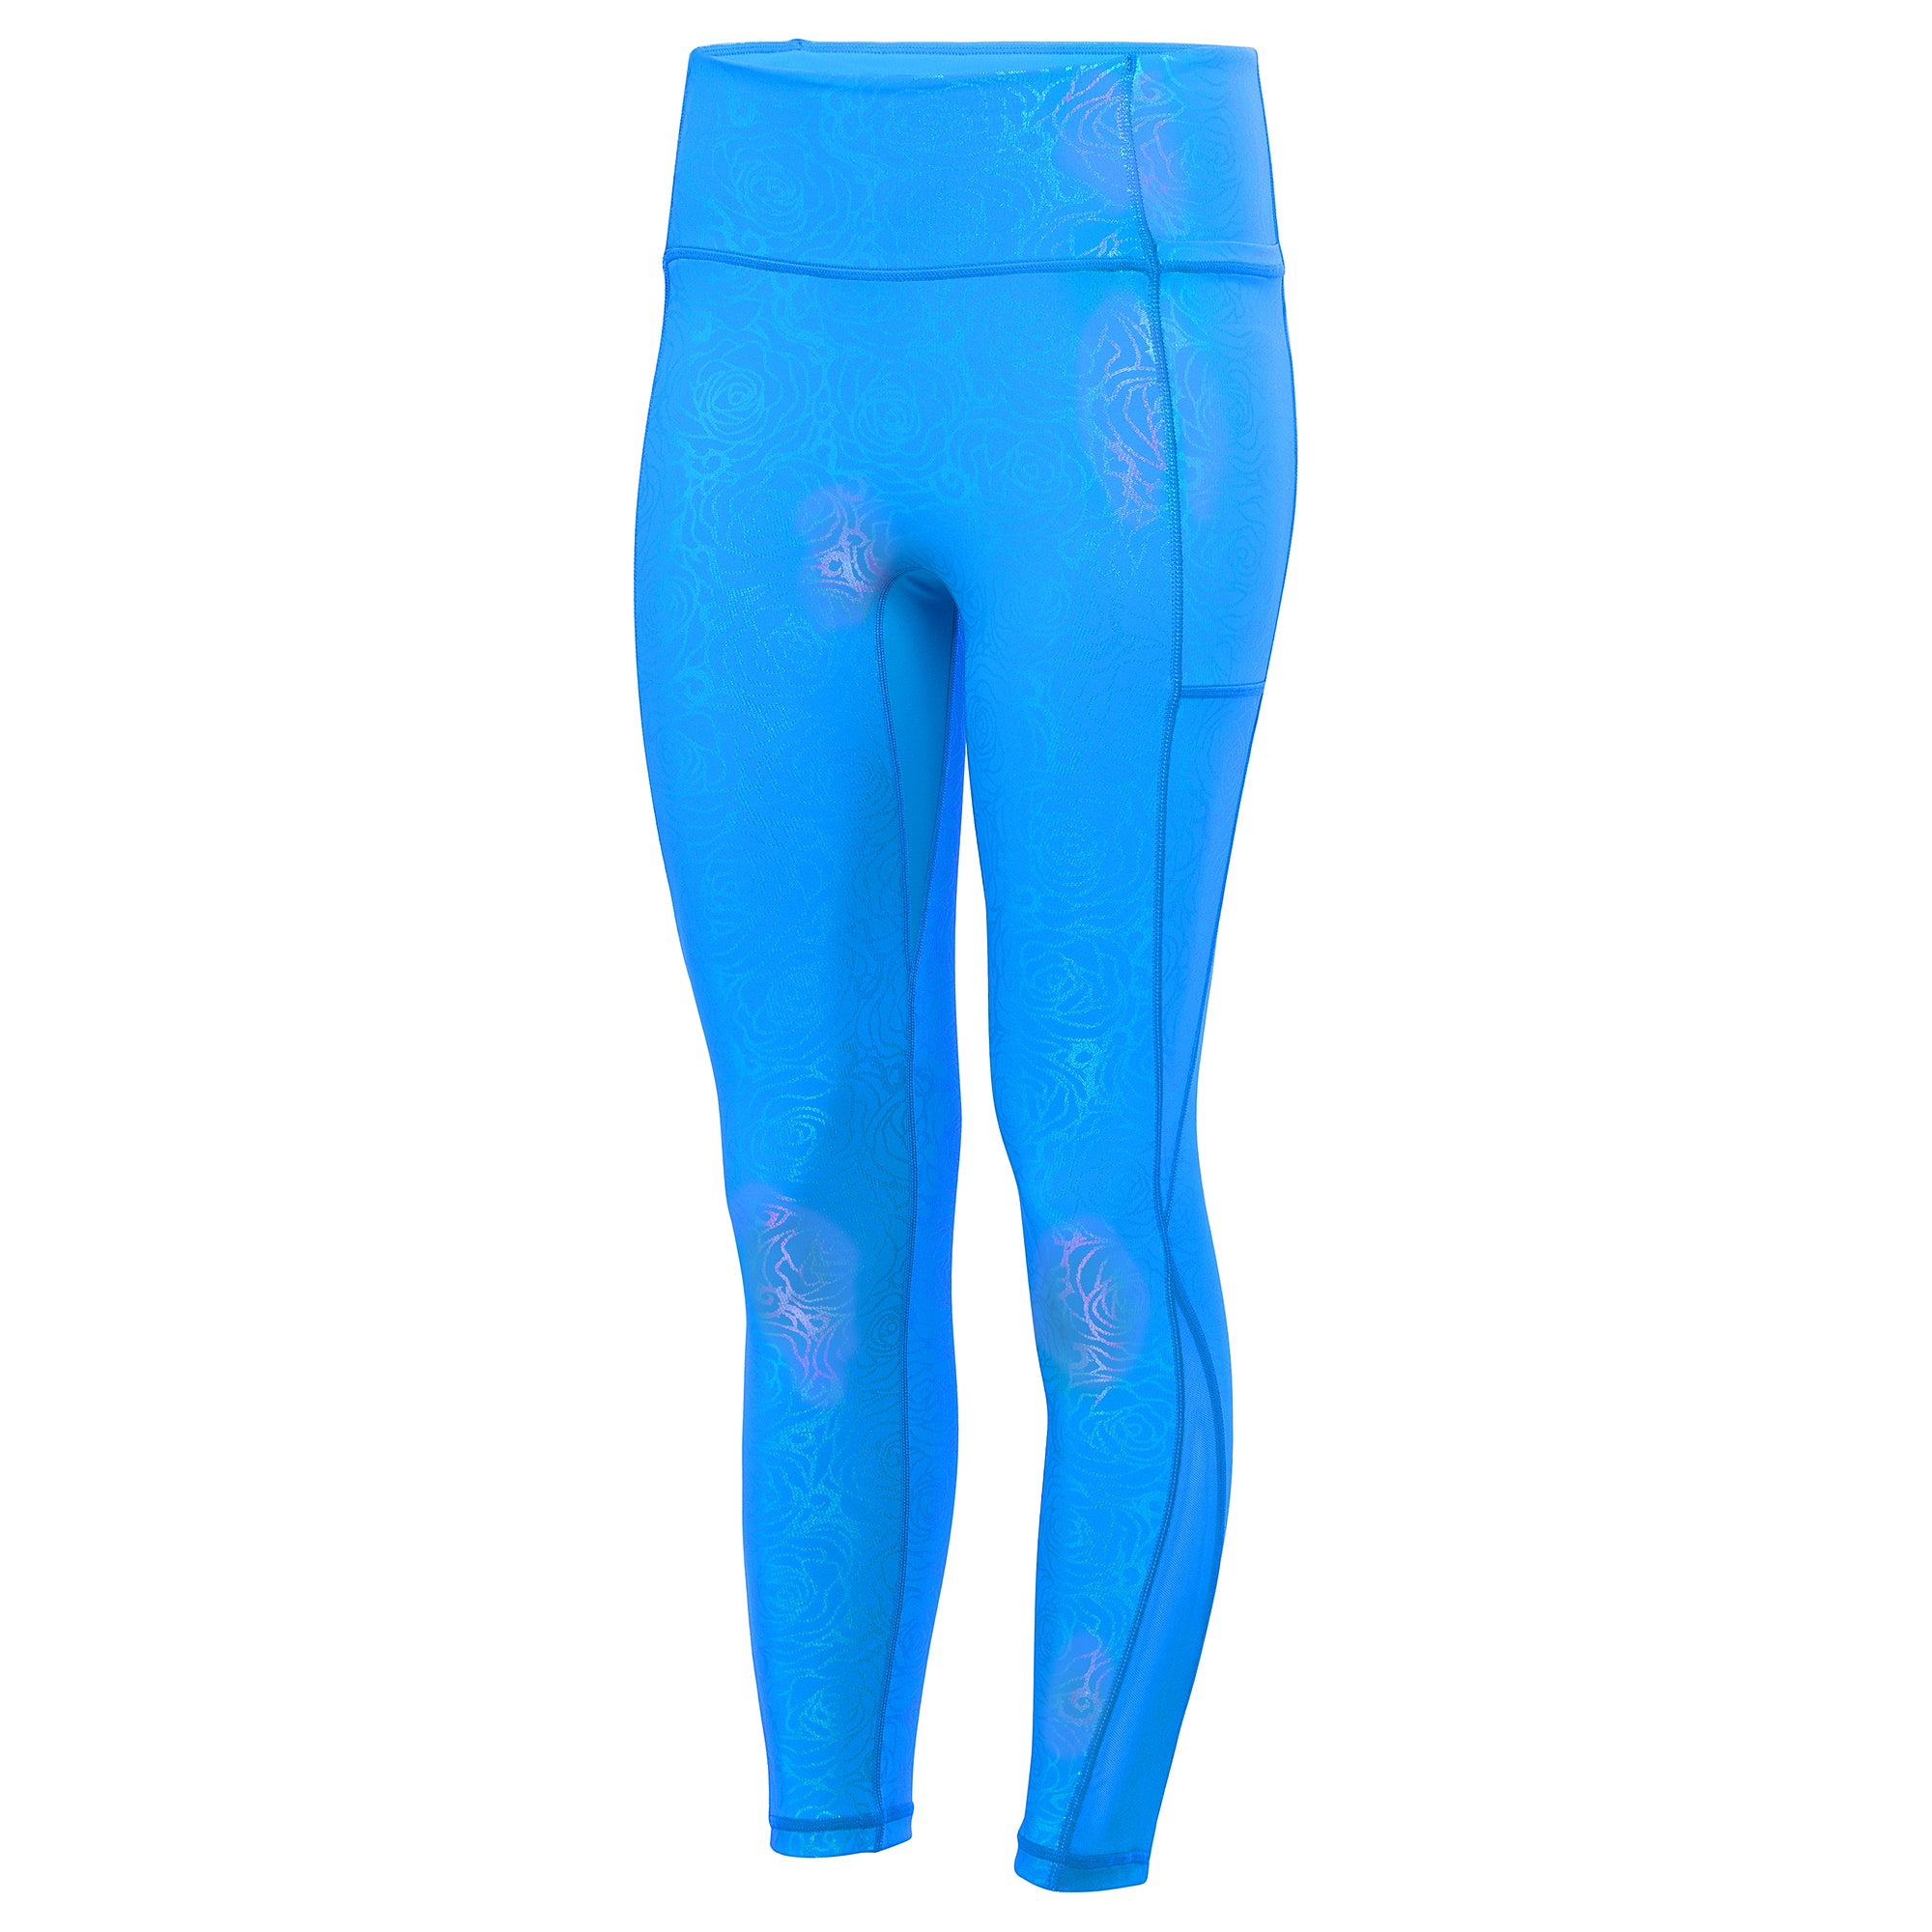 Blue Aurora Leggings – The Blue Body Brazil